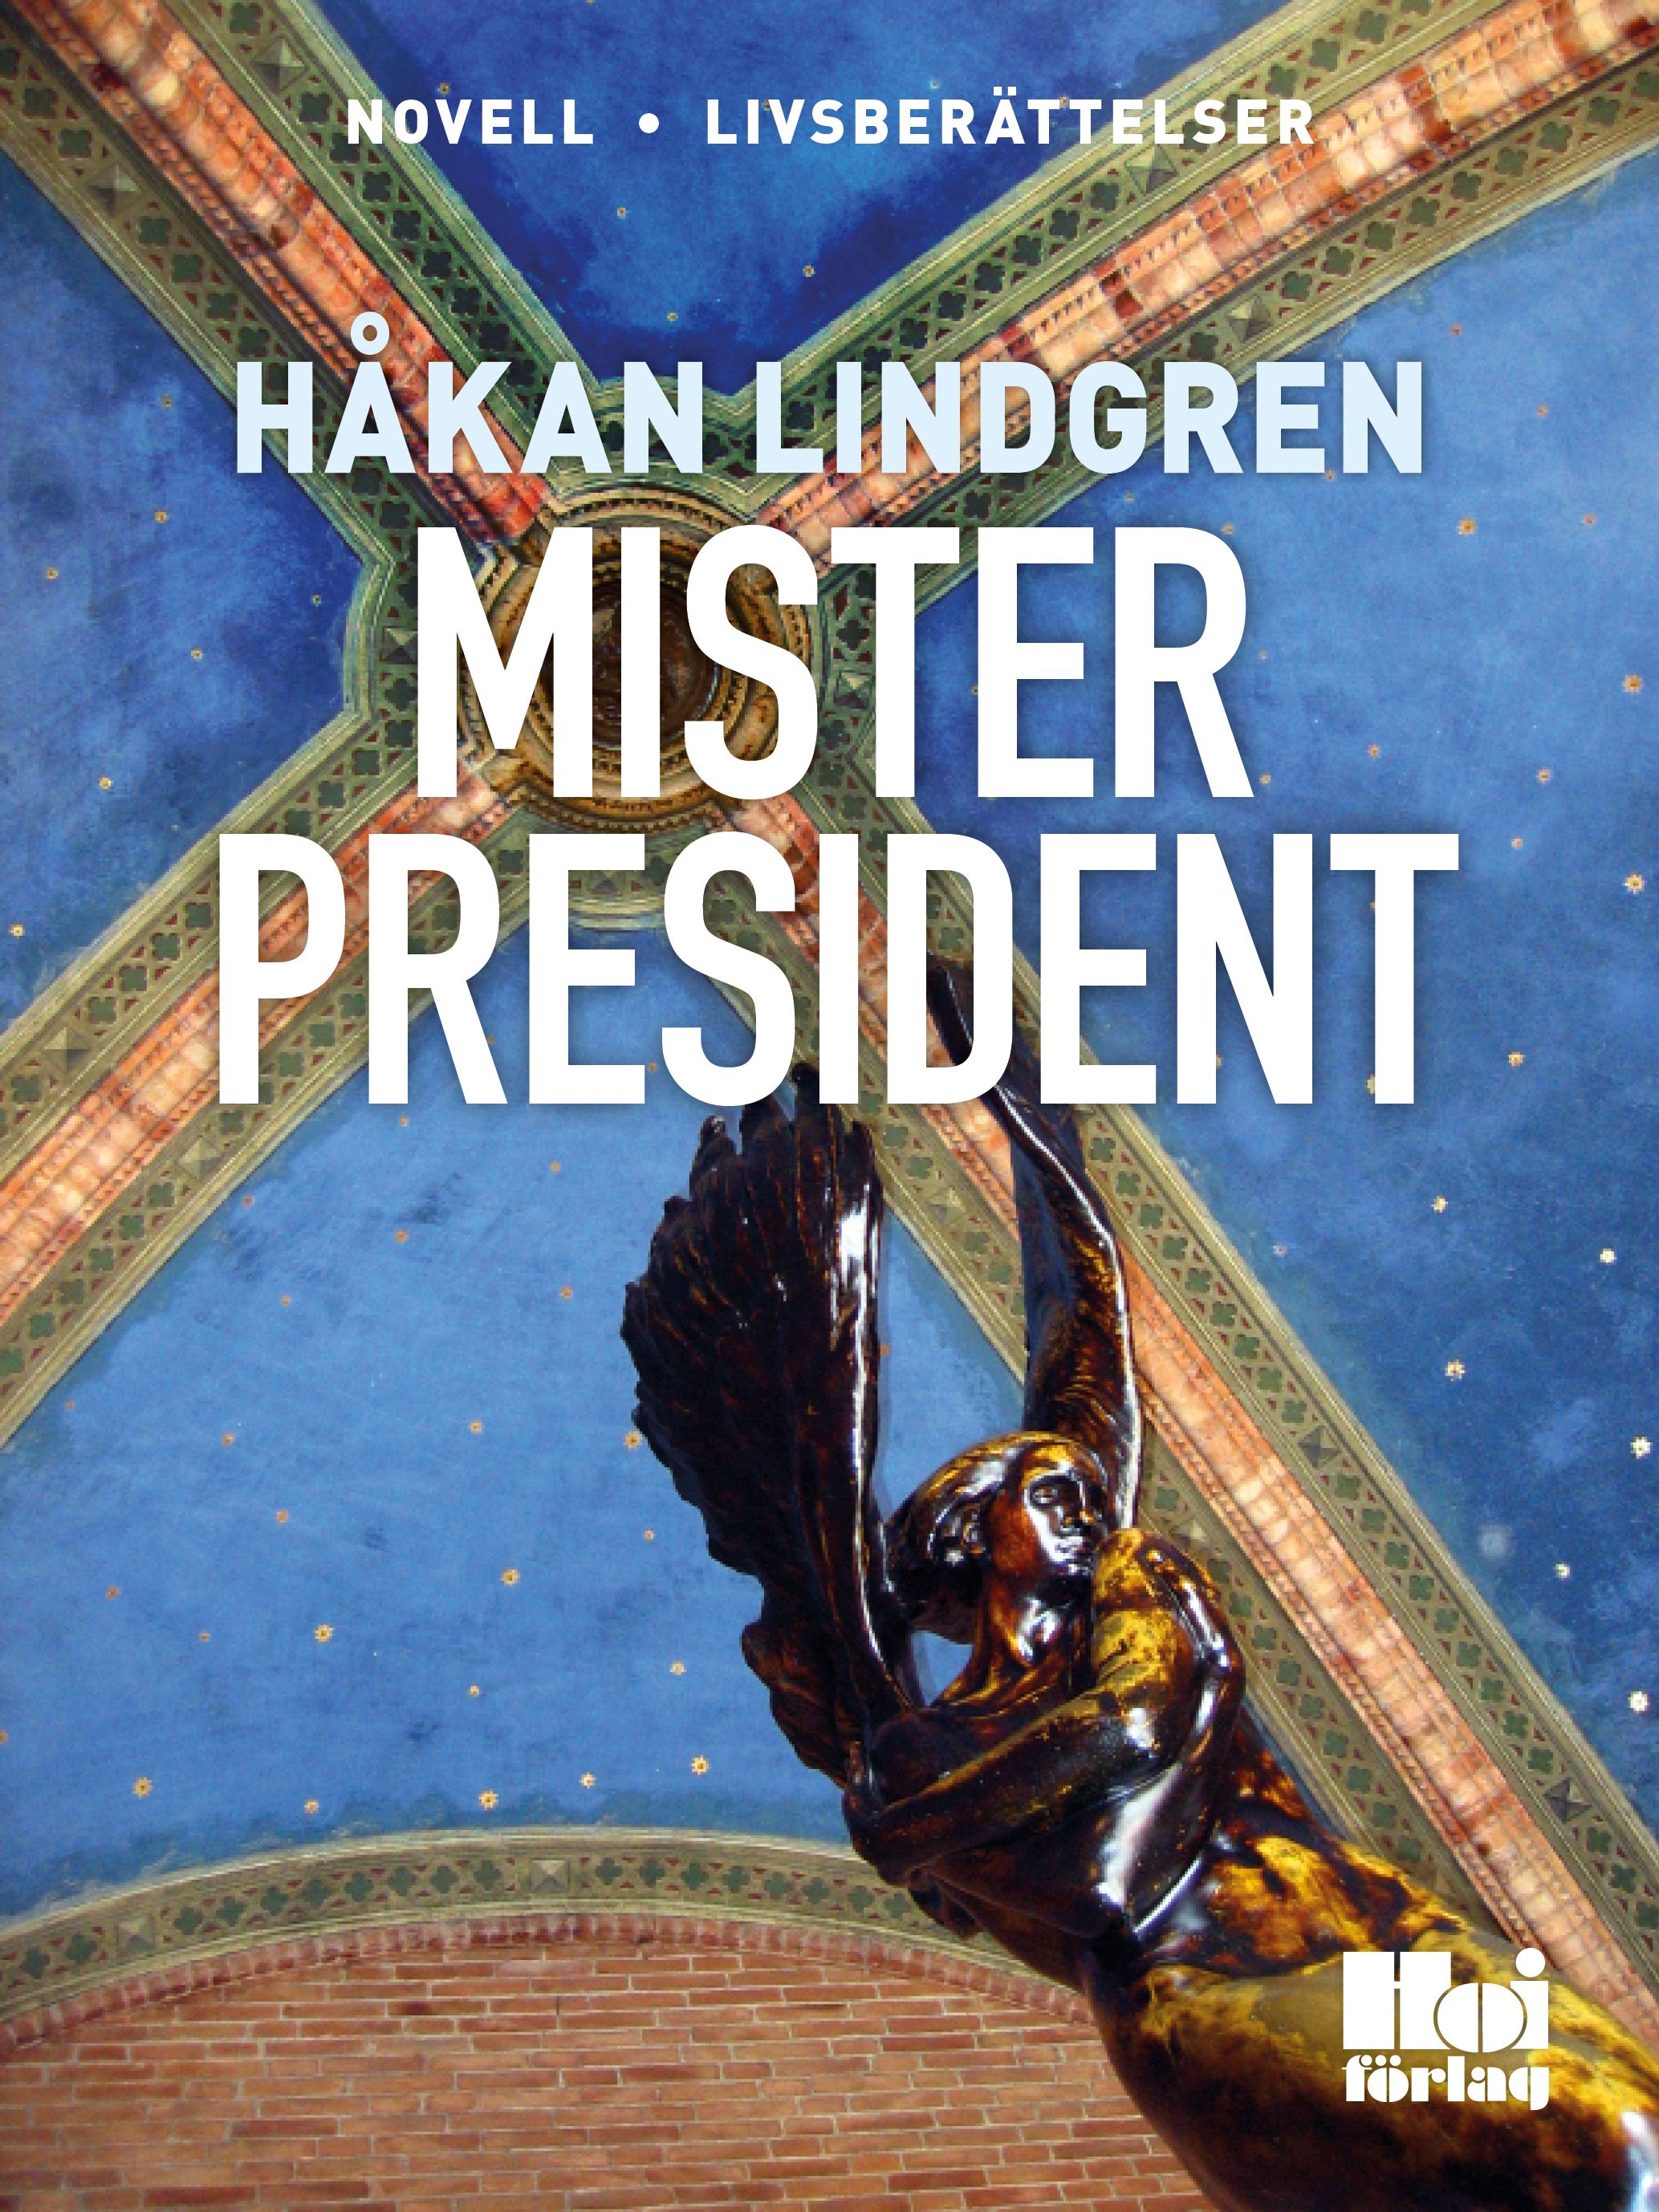 Mister President, e-bog af Håkan Lindgren